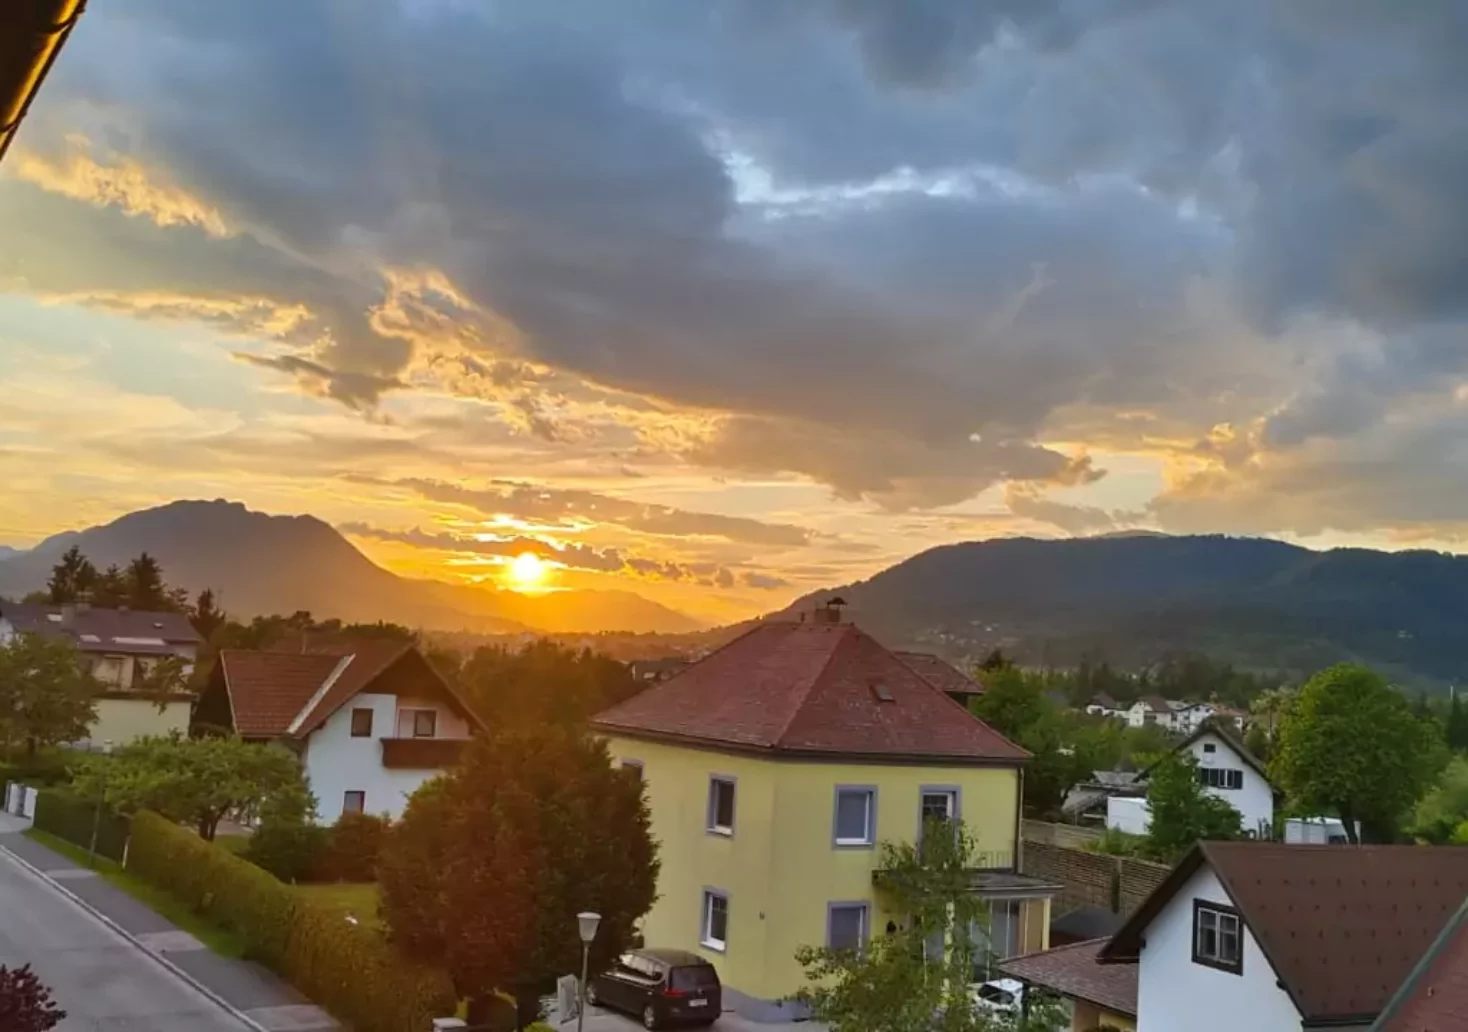 Bild auf 5min.at zeigt den Sonnenuntergang von Villach